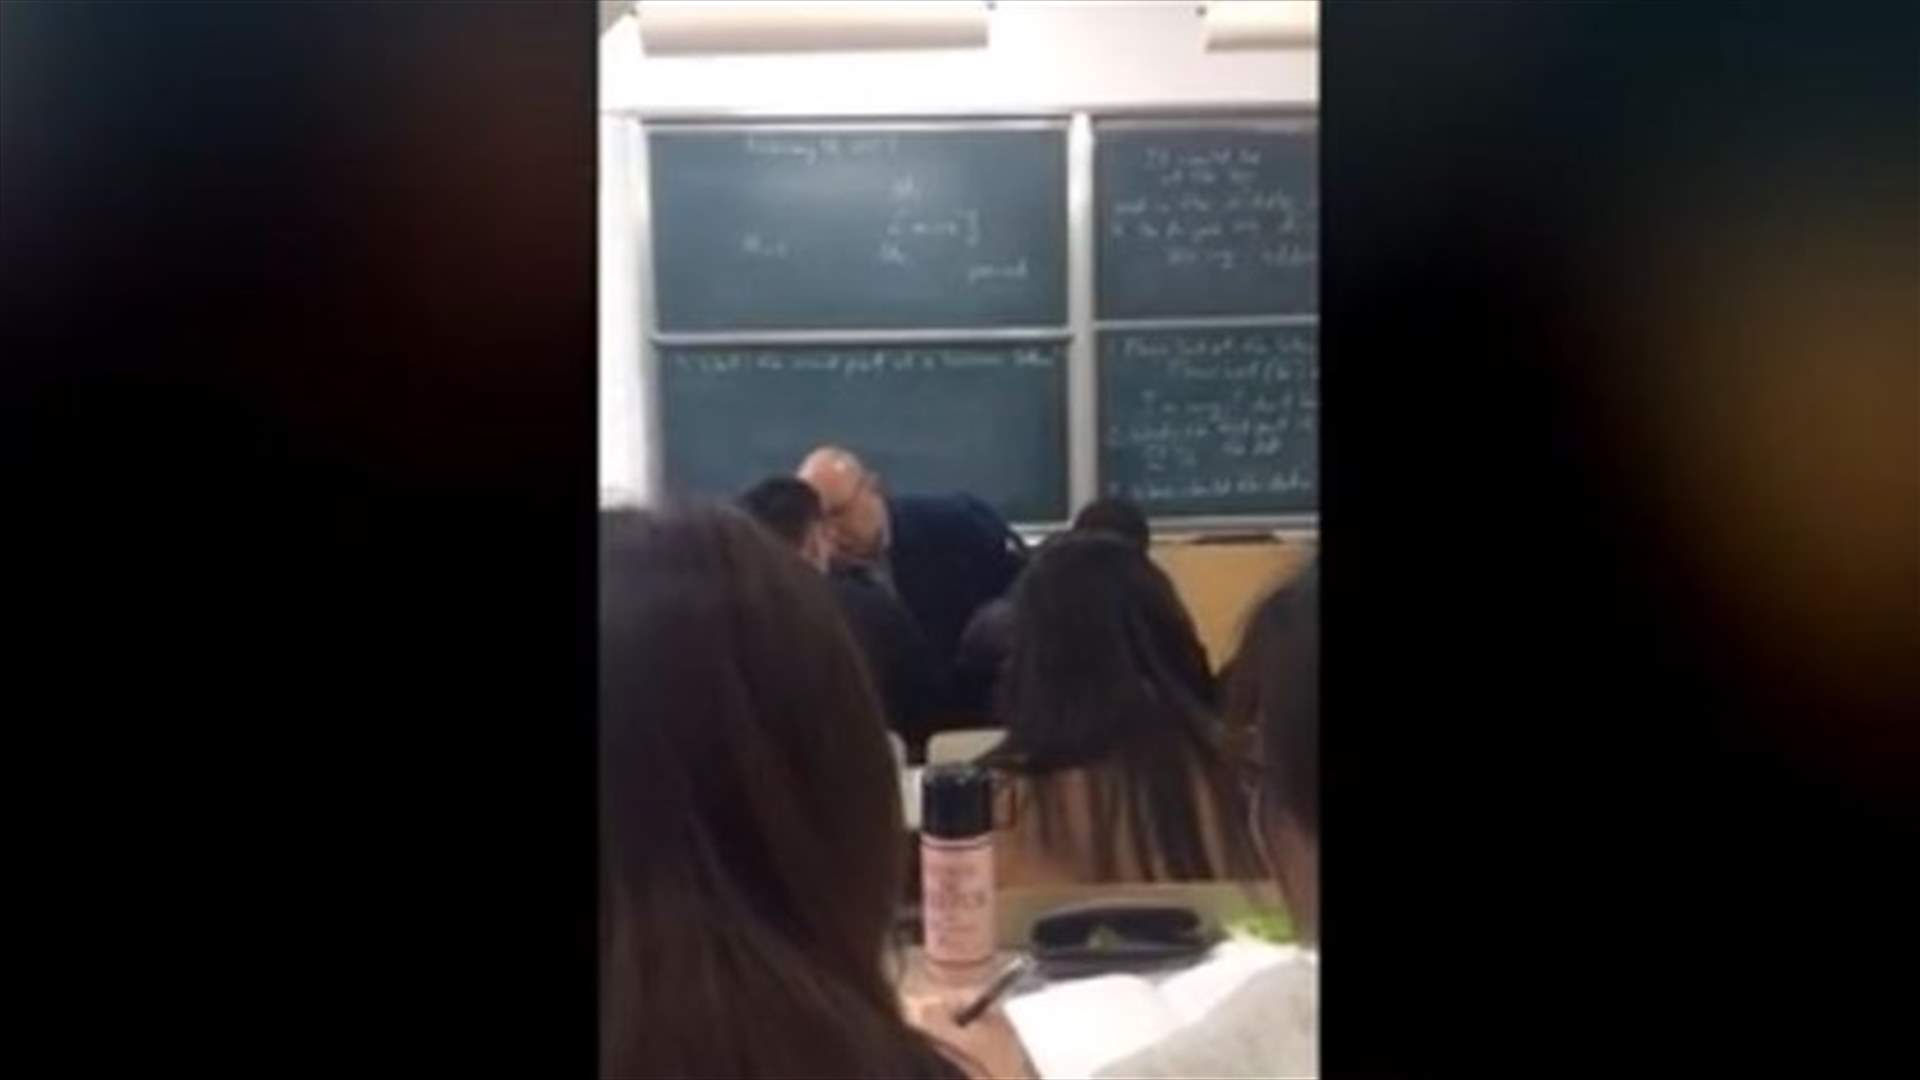 بالفيديو: أستاذ يفقد السيطرة على نفسه داخل الصف... بماذا وصف الطلاب؟